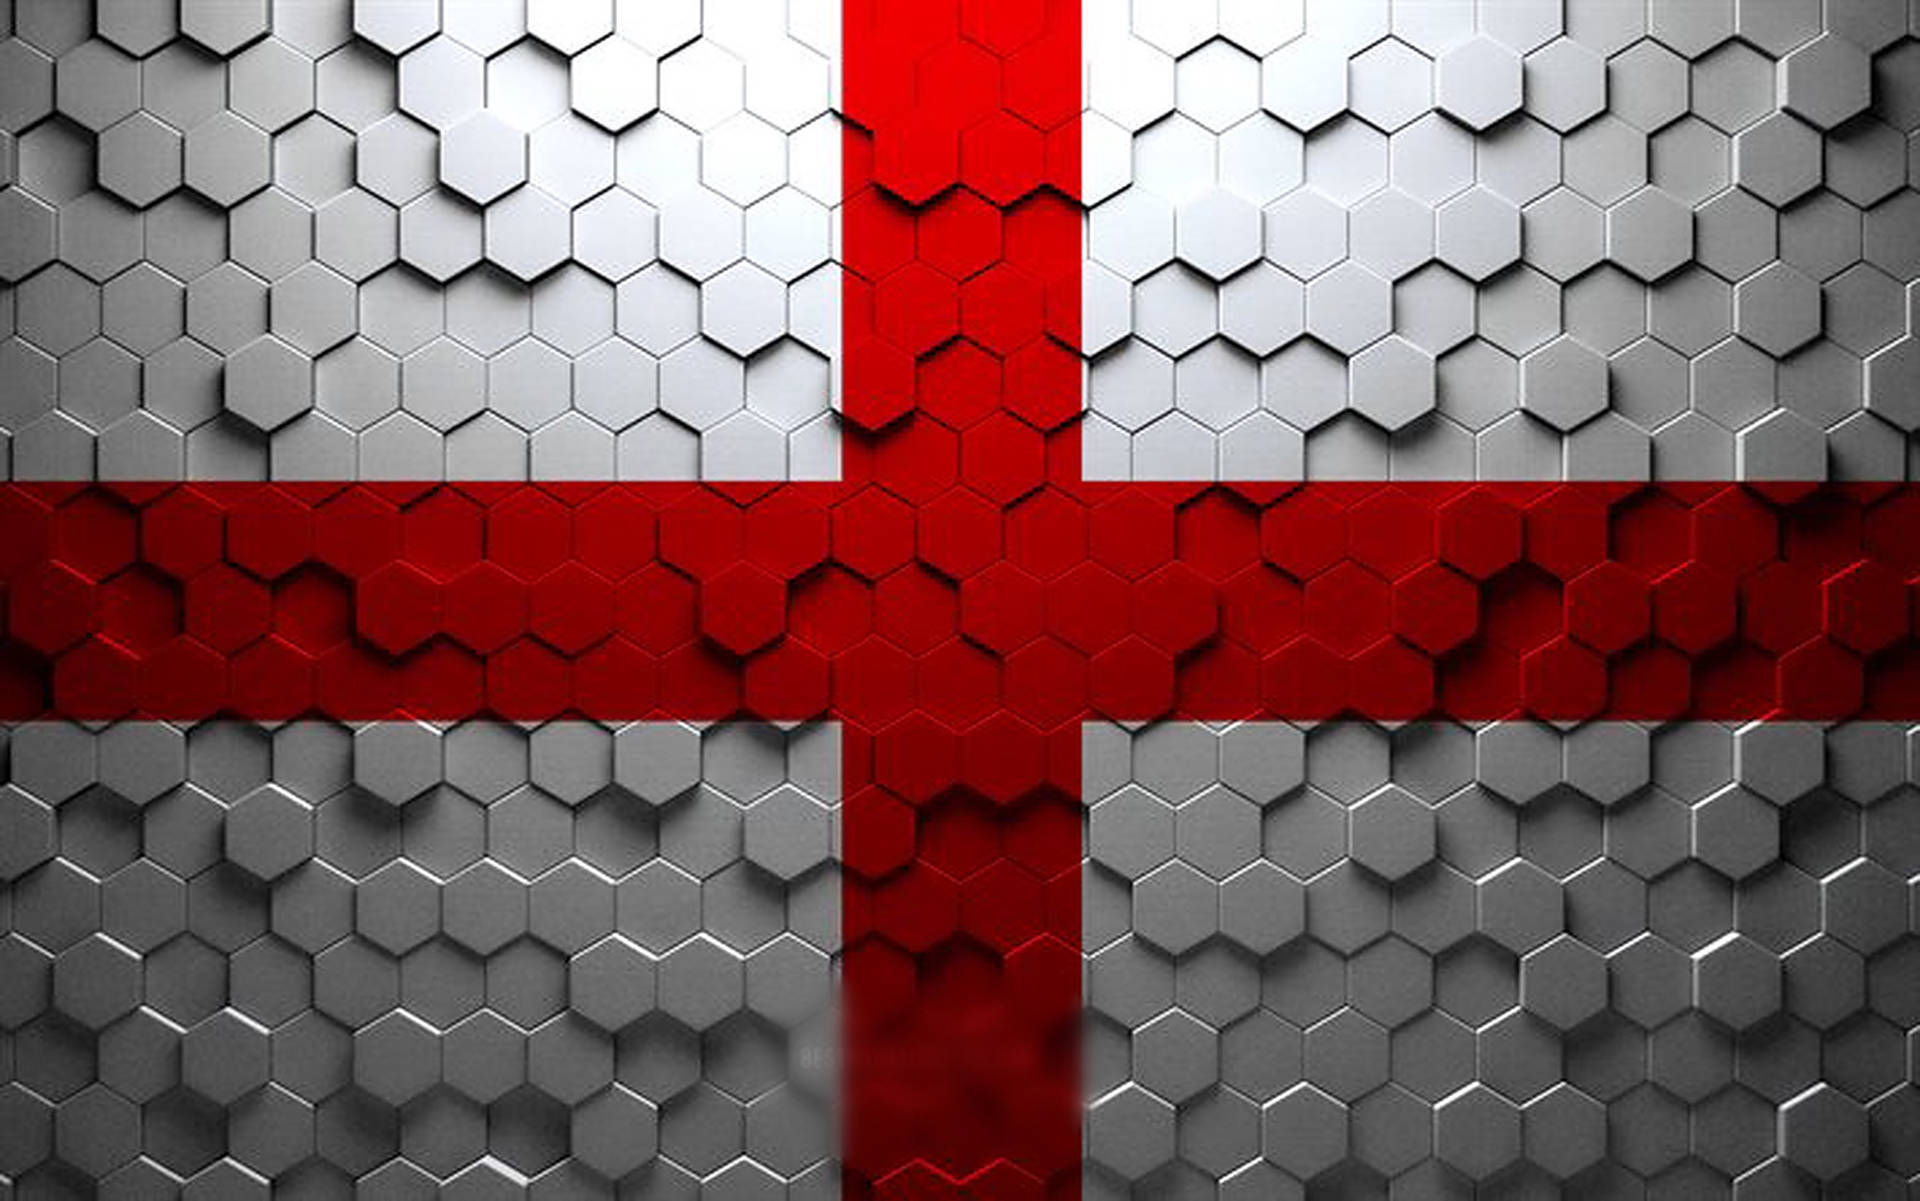 Englandsflagga I Hexagon Mönster. Wallpaper